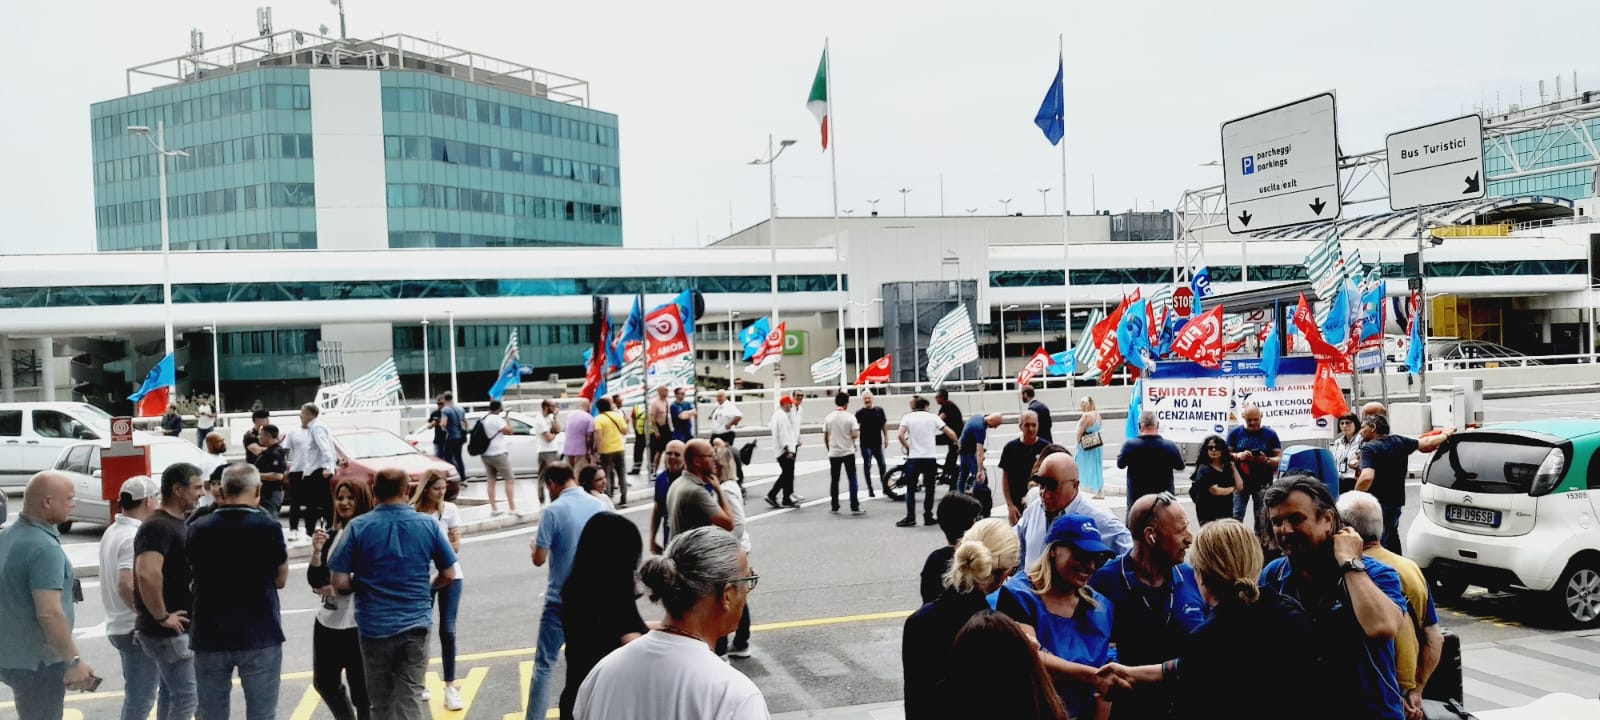 Trasporto aereo: Sindacati, adesioni oltre 90% a sciopero lavoratori handling aeroporti